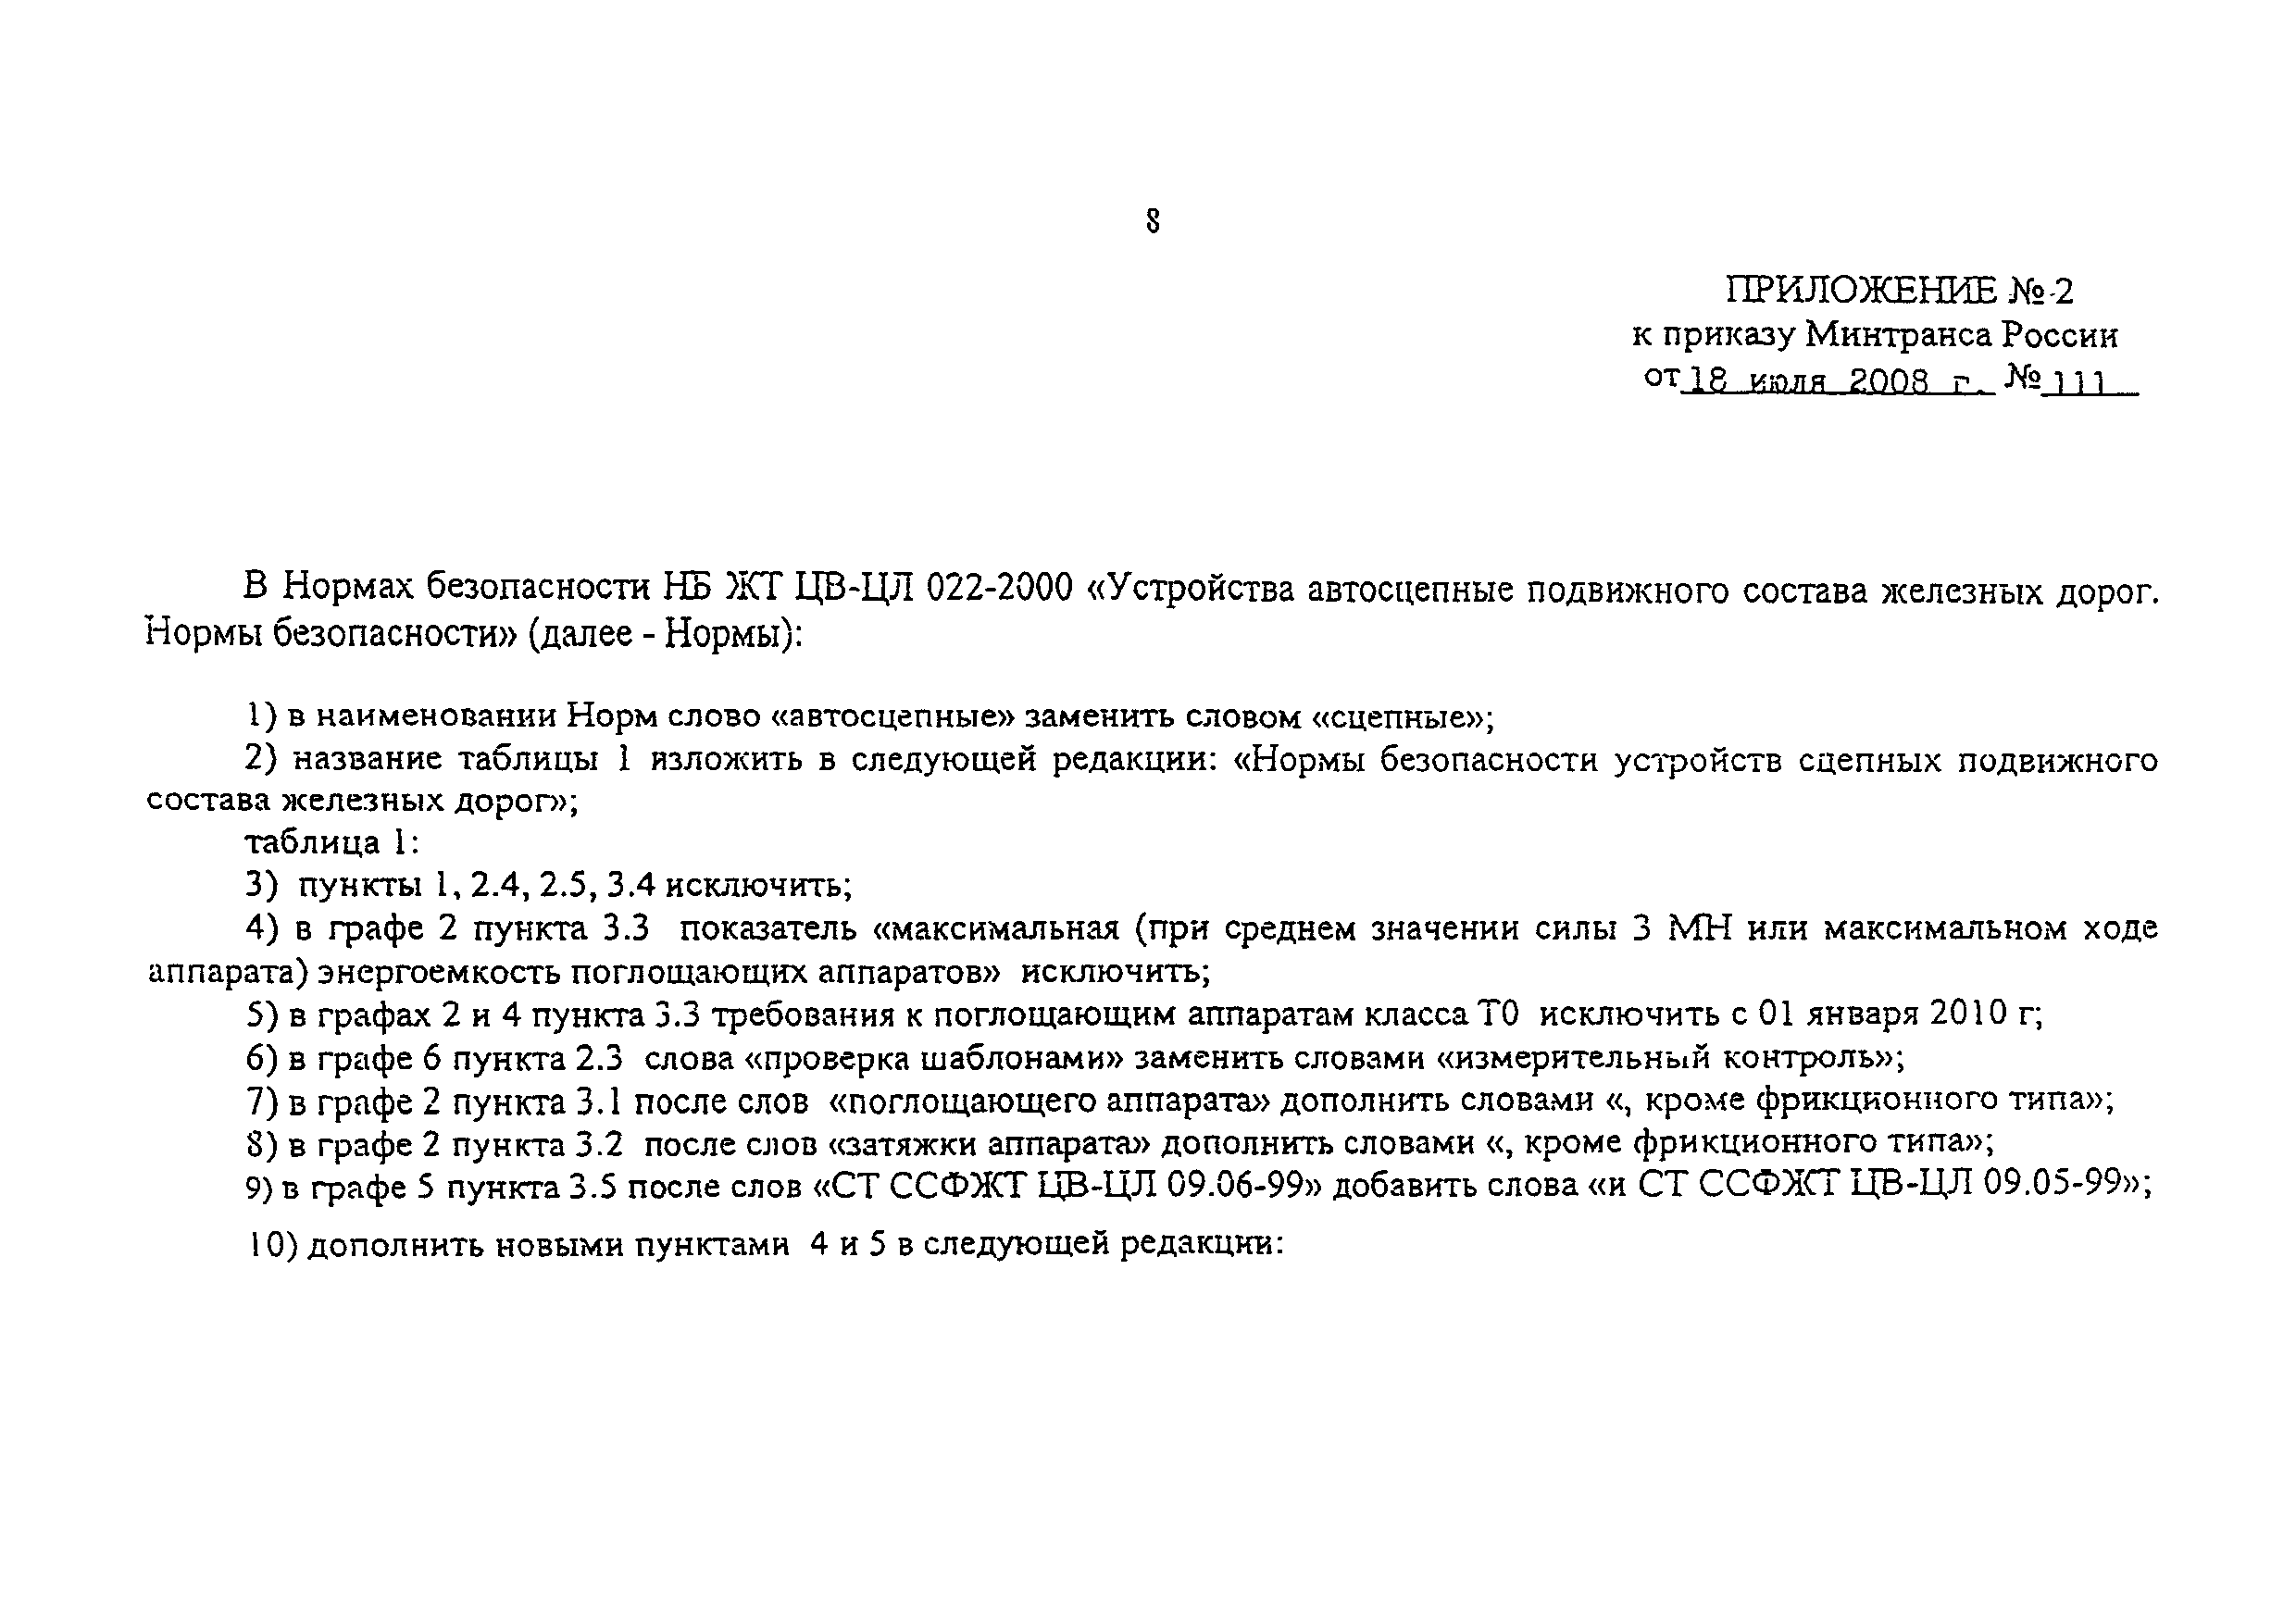 НБ ЖТ ЦВ-ЦЛ 022-2000